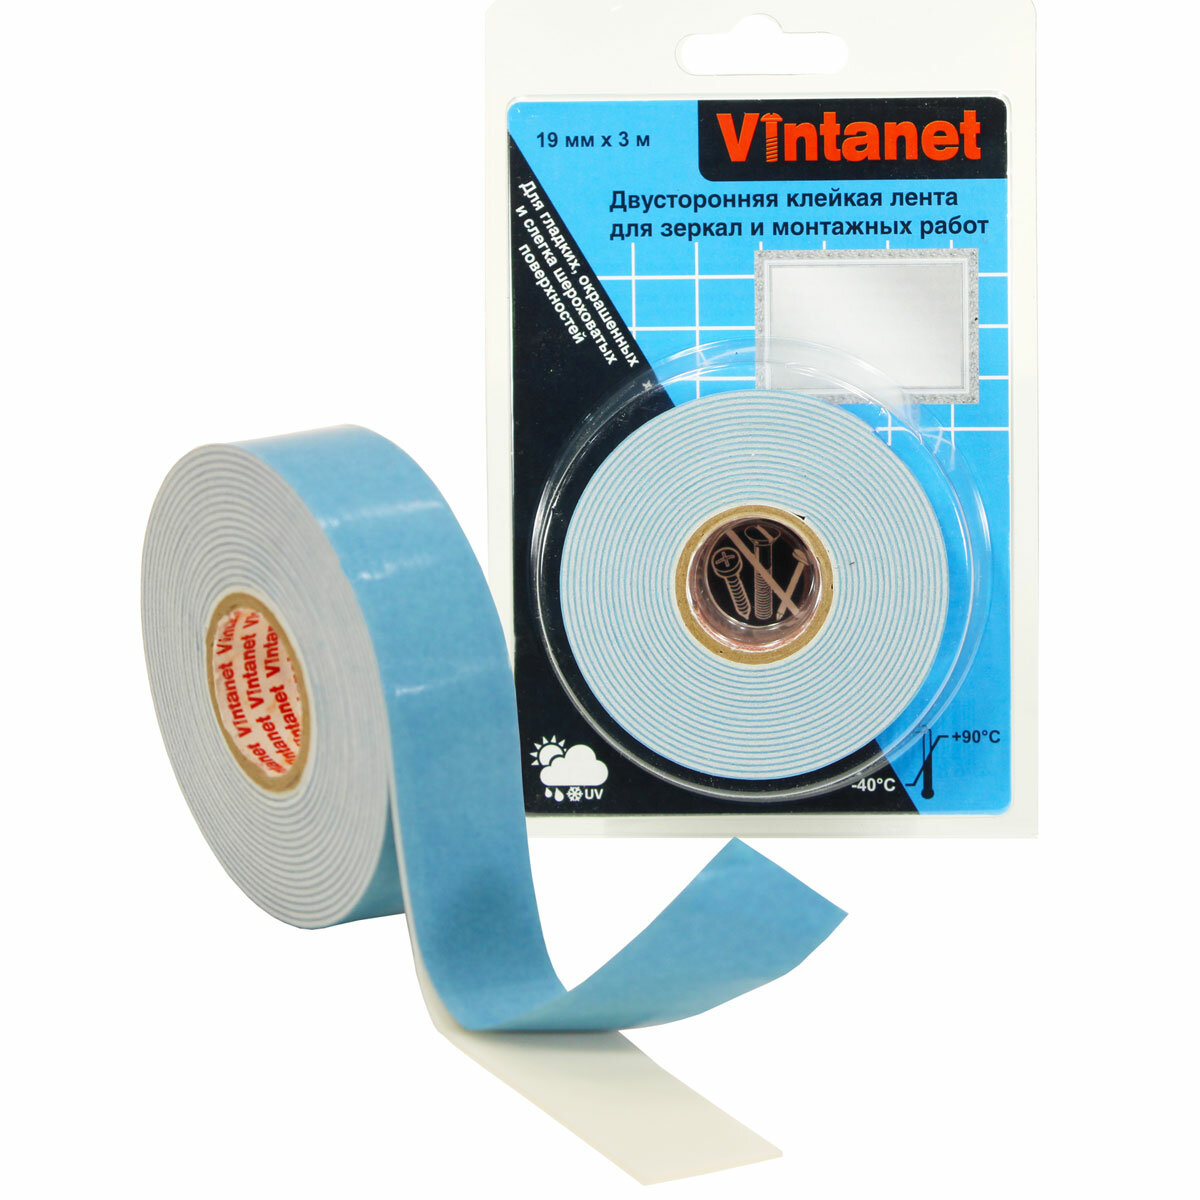 Двусторонняя клейкая лента VN819 Vintanet для зеркал и монтажных работ, 19 мм х 3 м - фотография № 1